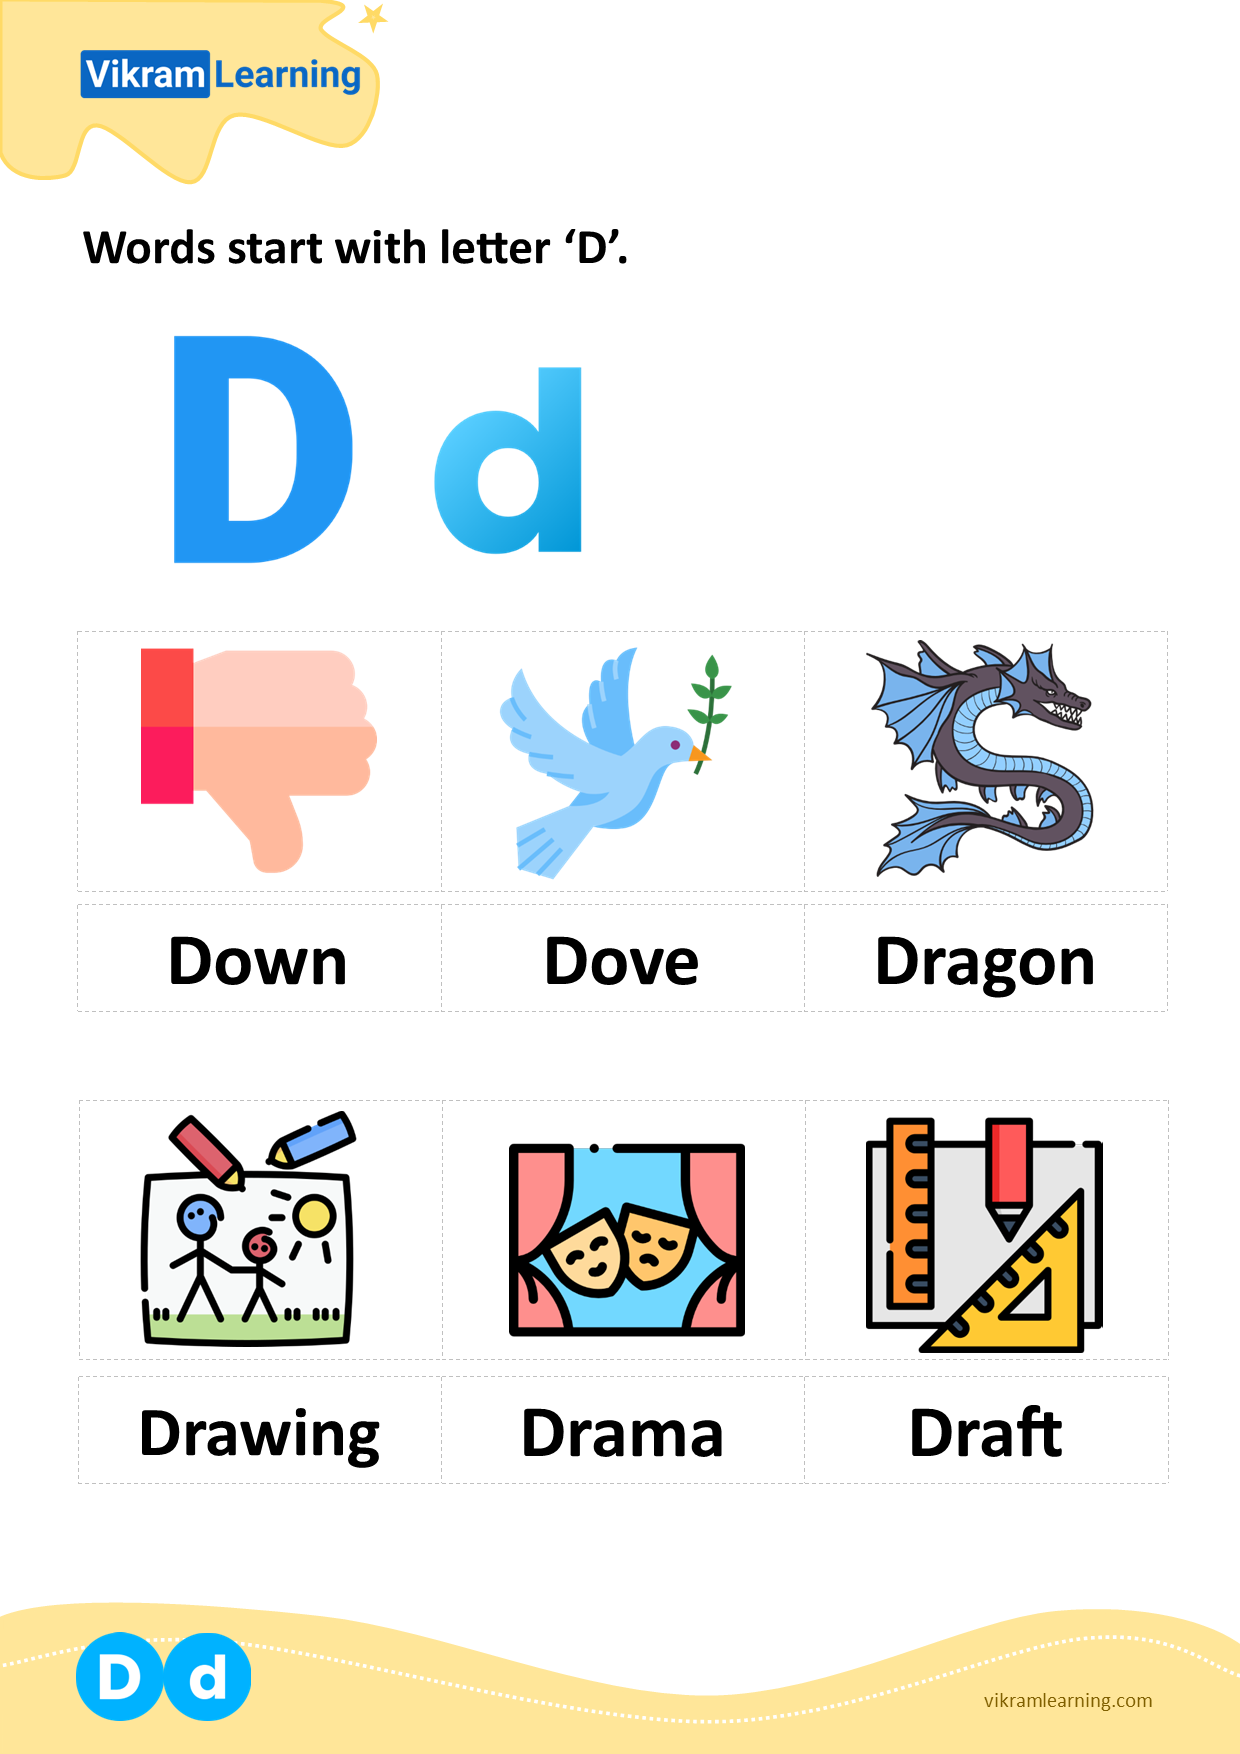 Download words start with letter 'd' worksheets | vikramlearning.com